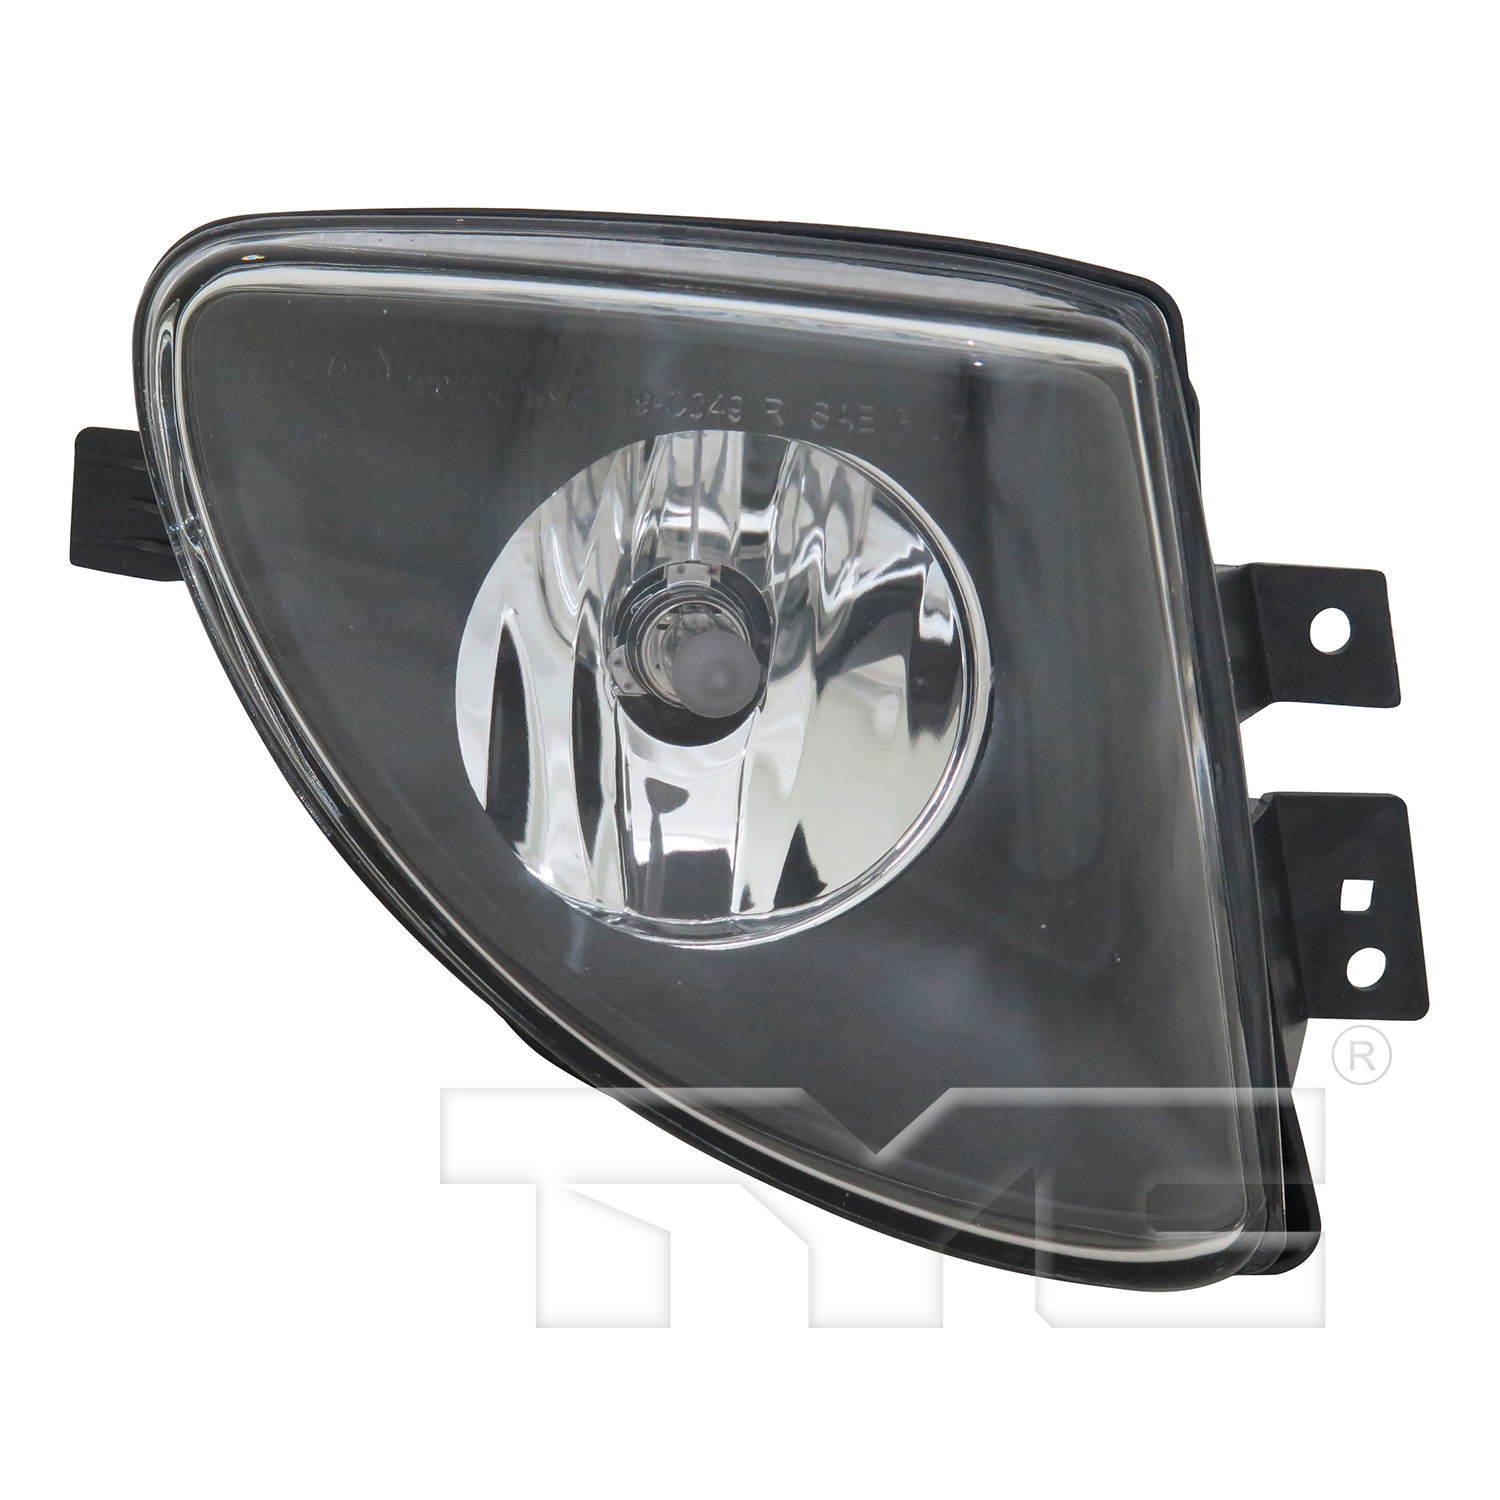 Aftermarket FOG LIGHTS for BMW - 528I, 528i,11-13,RT Fog lamp assy